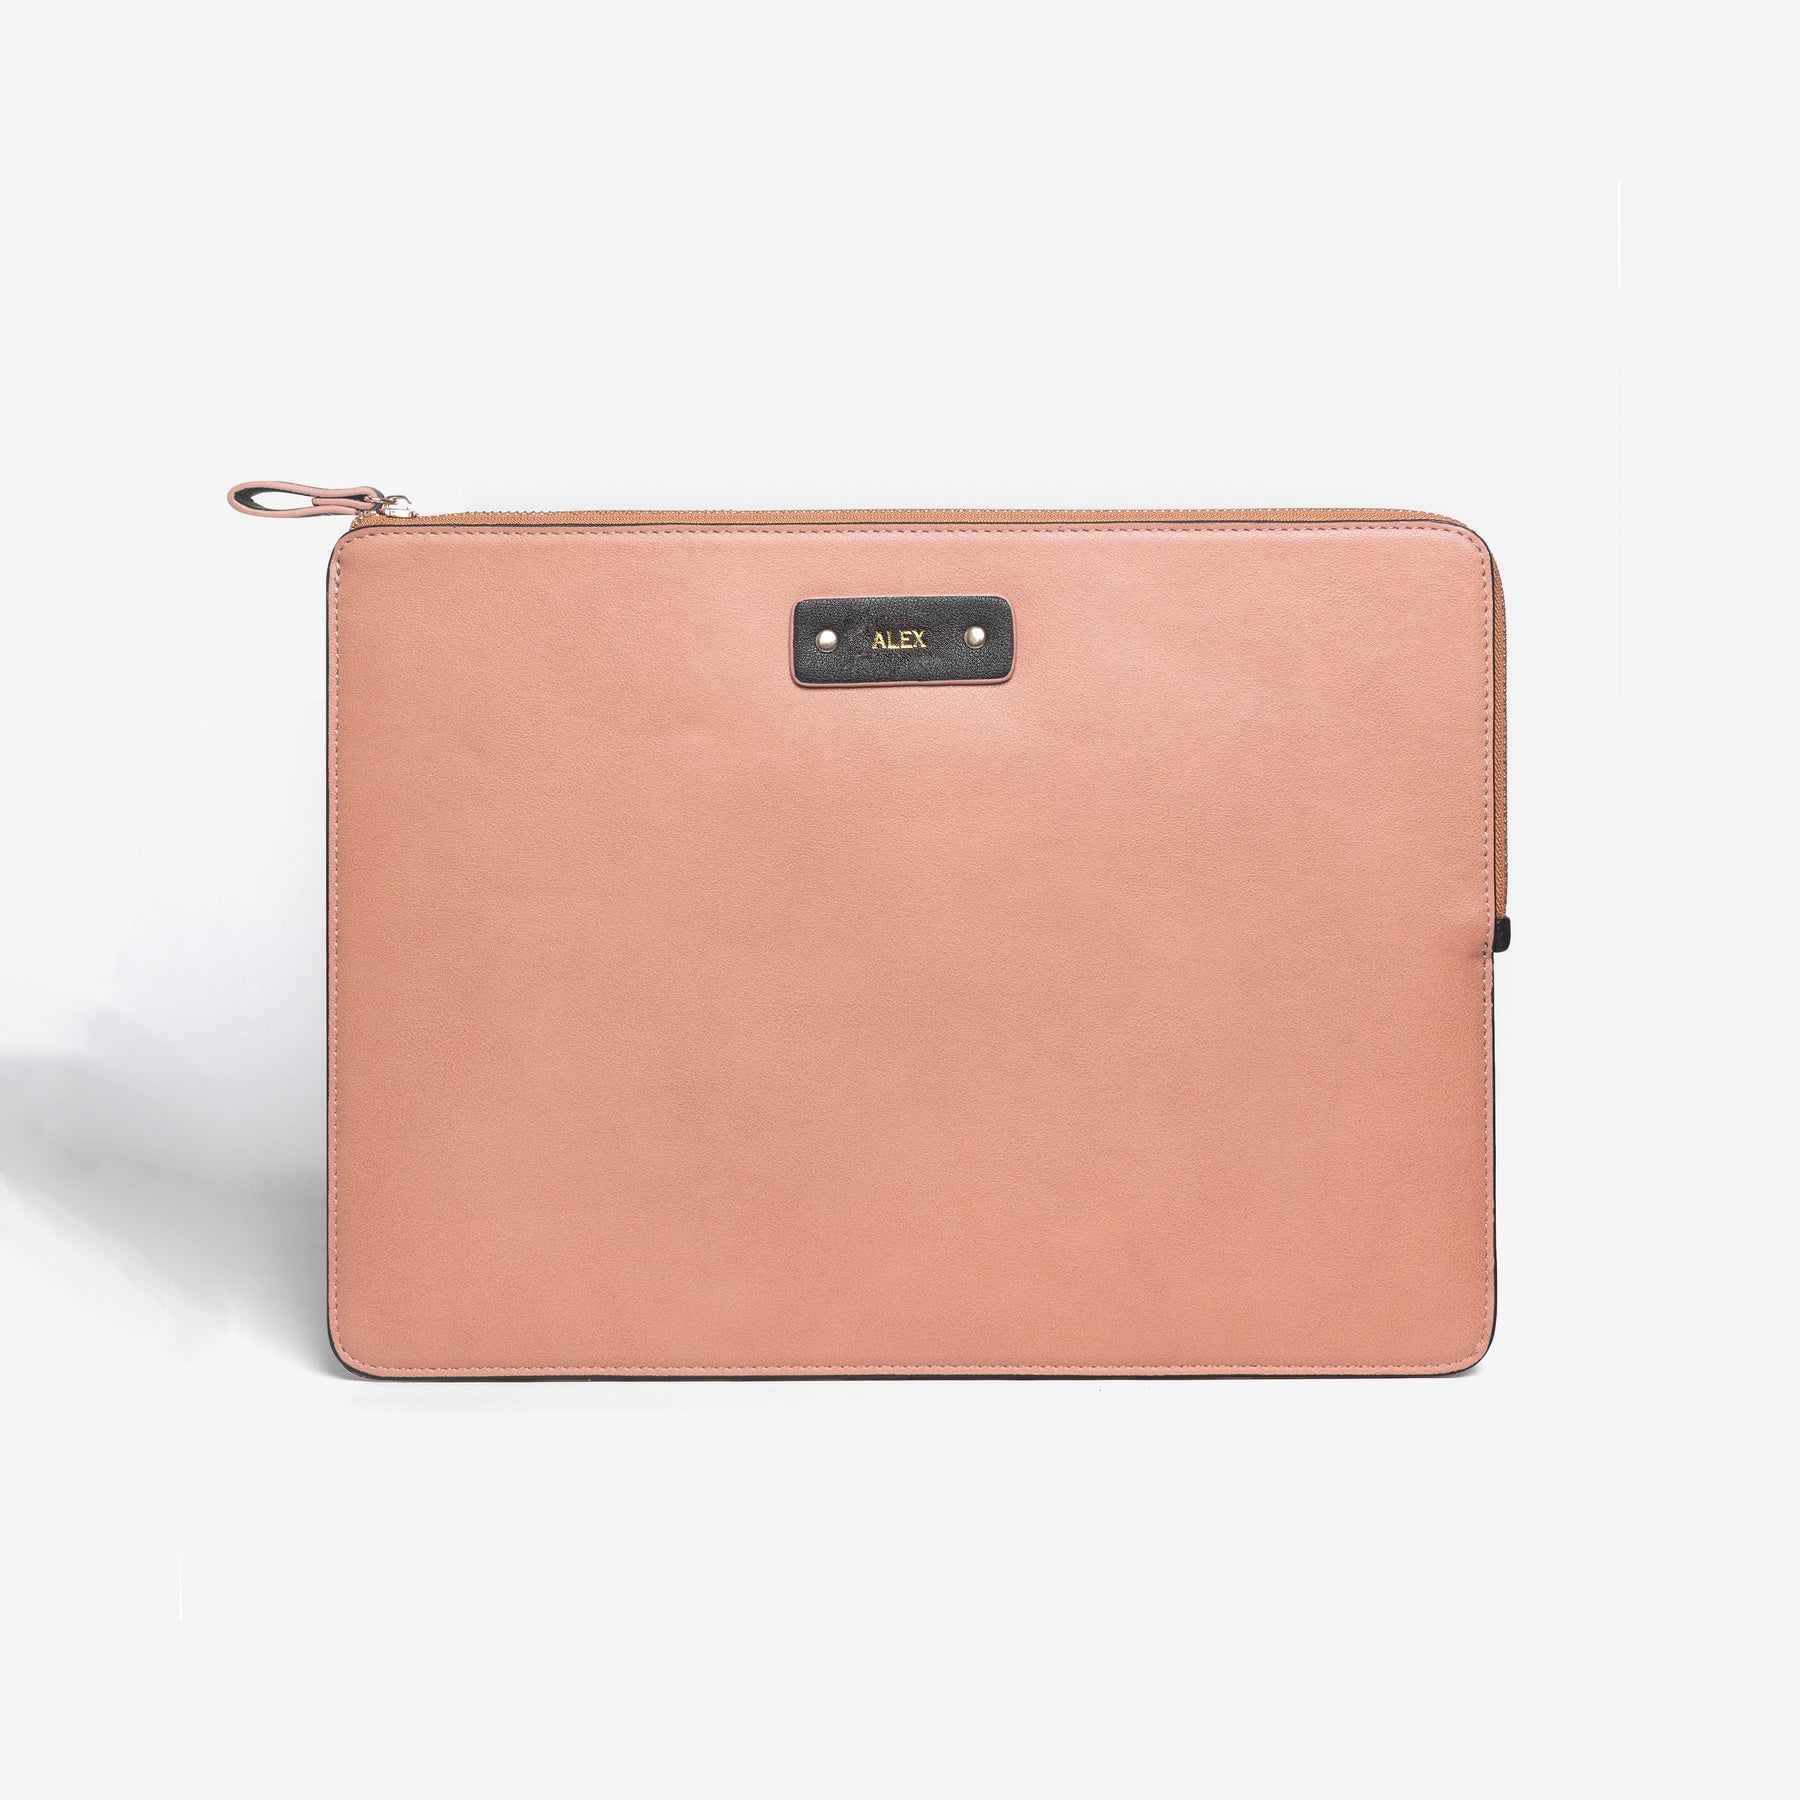 Personalized Vegan Leather iPad Sleeve - Blush